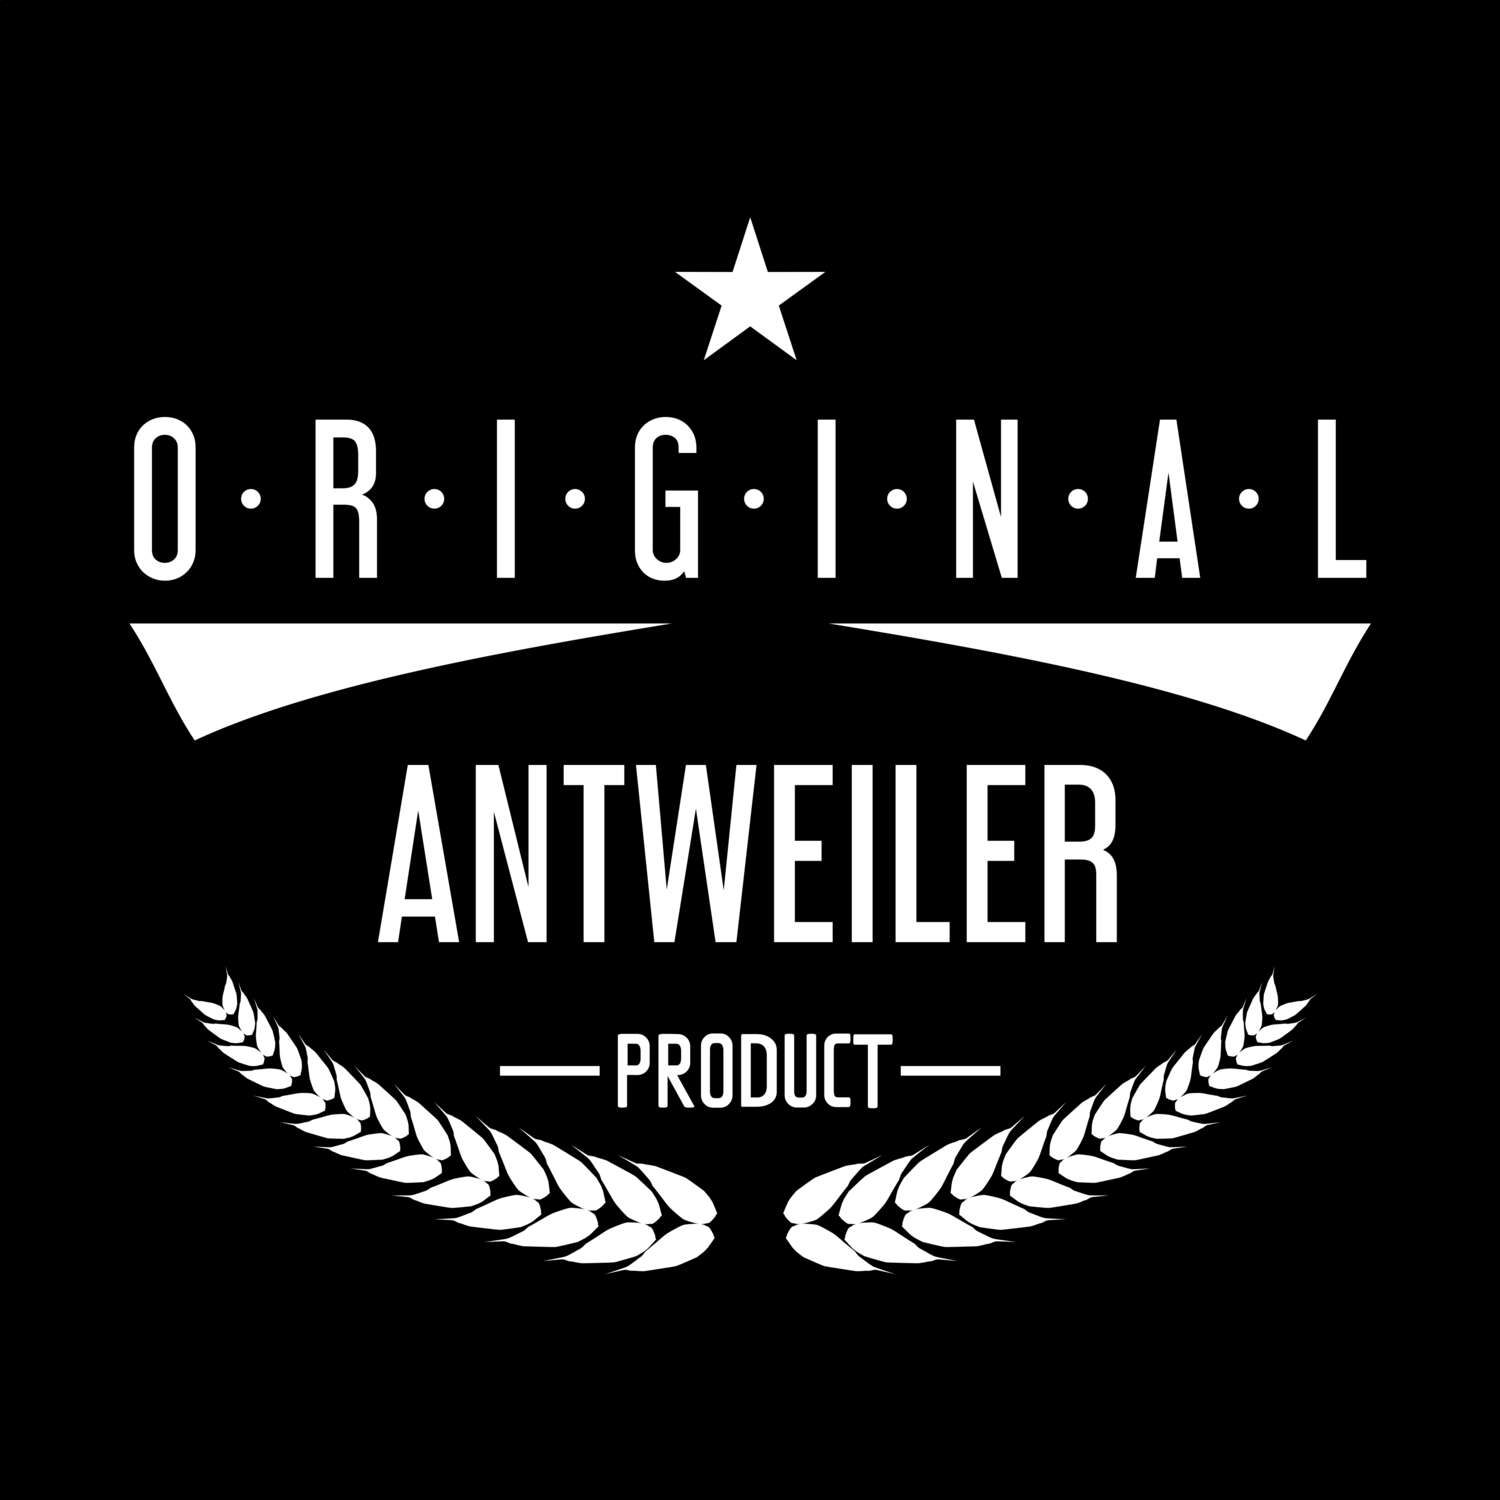 Antweiler T-Shirt »Original Product«